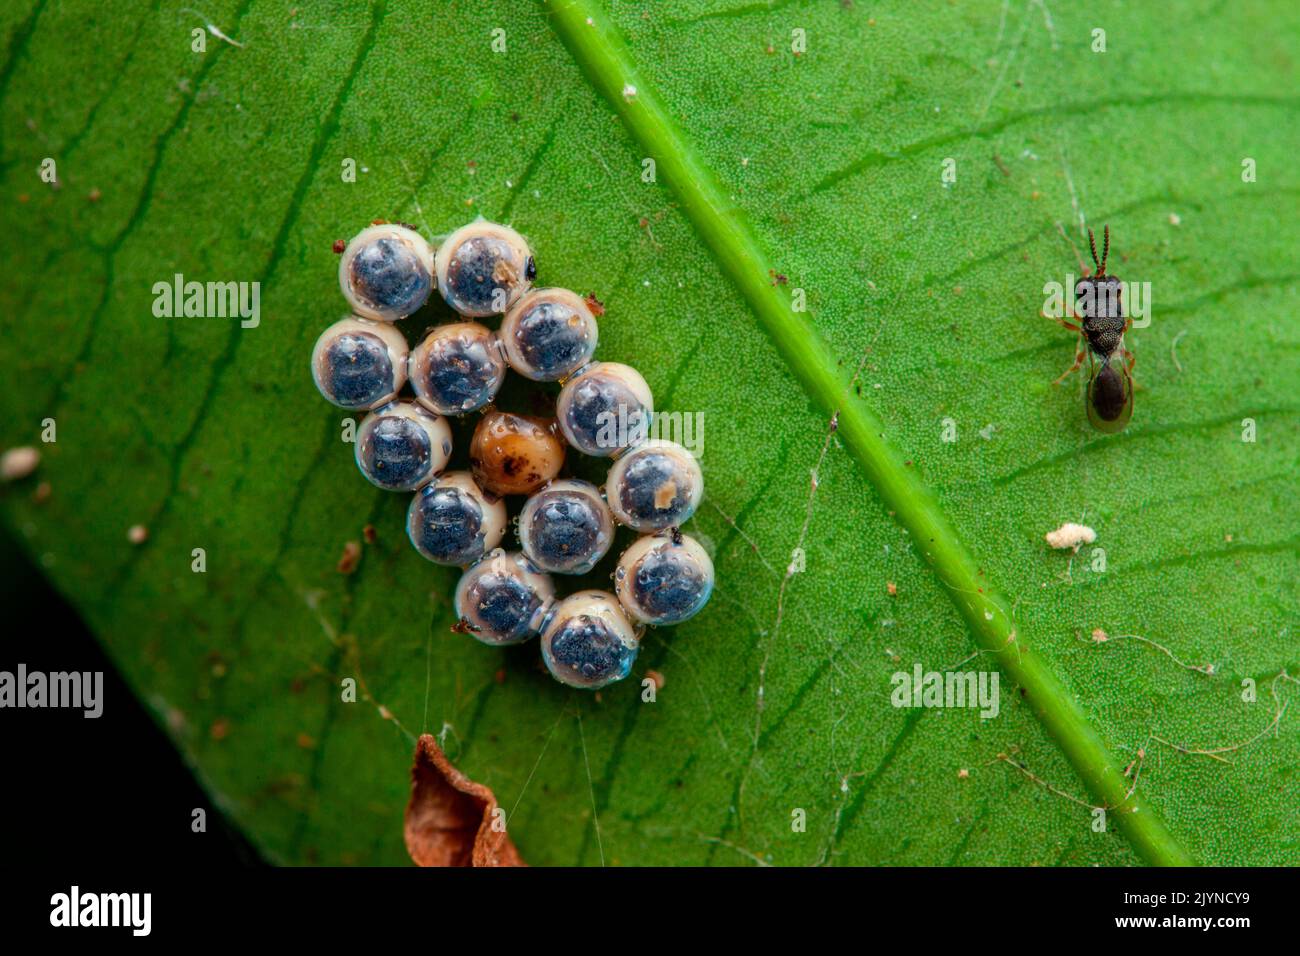 Hemiptera eggs + Chalcid wasp, Sonzapote, Costa Rica Stock Photo